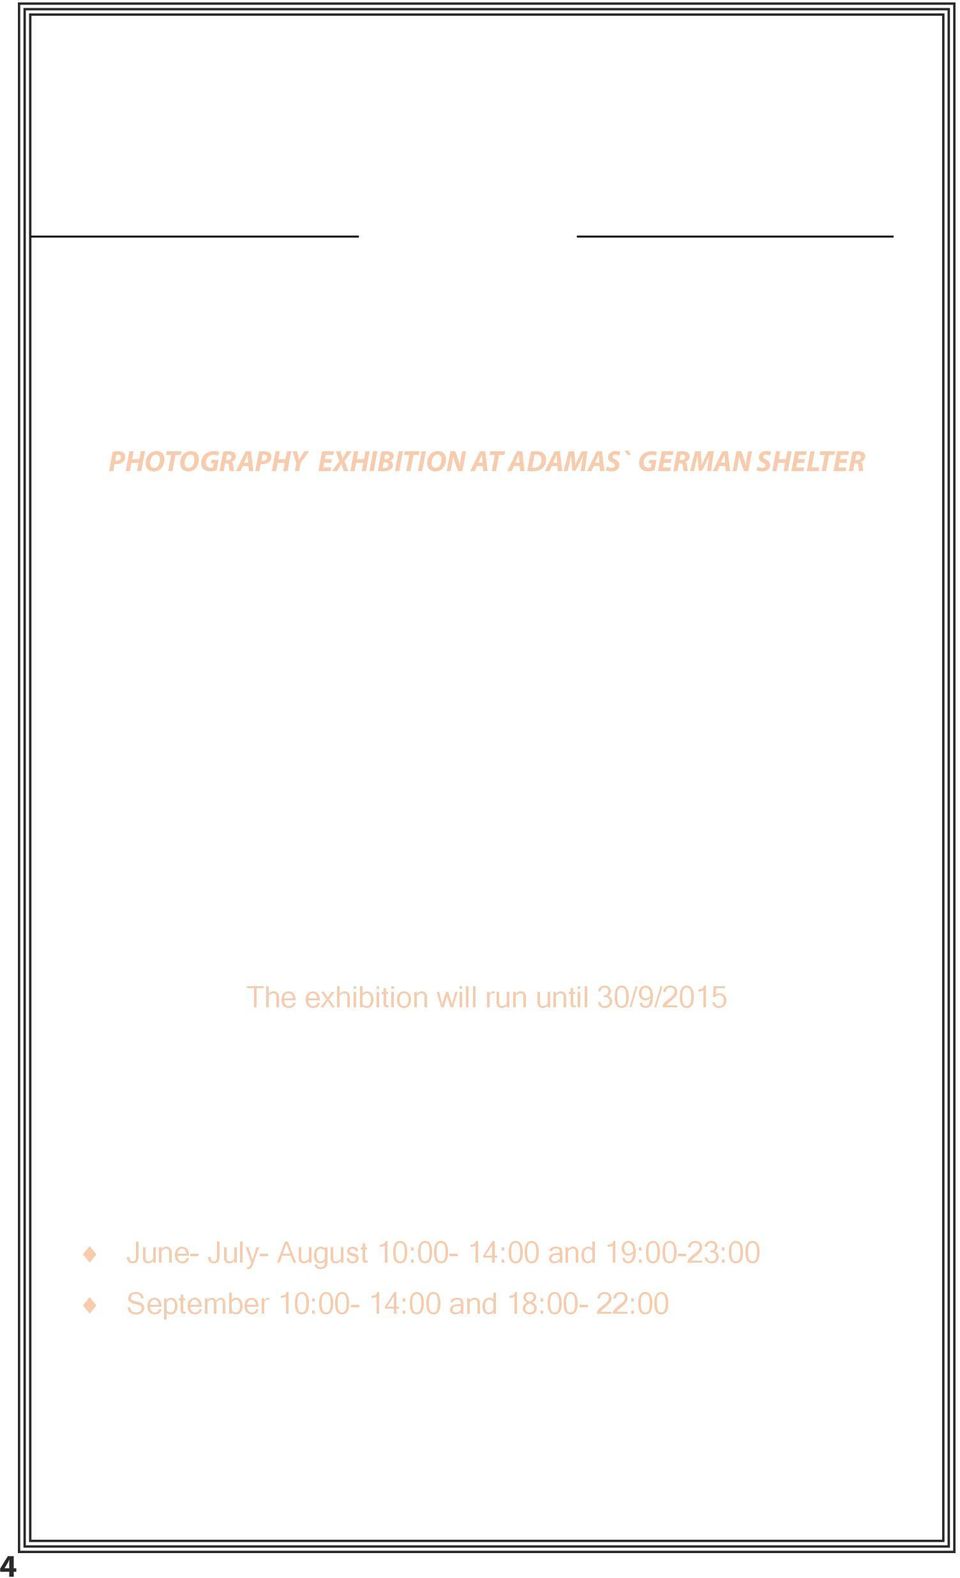 ΙΑΣ ΣΤΟ ΓΕΡΜΑΝΙΚΟ ΚΑΤΑΦΥΓΙΟ ΑΔΑΜΑΝΤΑ ΔΙΟΡΓΑΝΩΣΗ Ε.Φ.Α. PHOTOGRAPHY EXHIBITION AT ADAMAS` GERMAN SHELTER Η Ε.Φ.Α. στα πλαίσια του 22 ου Φεστιβάλ Μήλου διοργανώνει έκθεση φωτογραφίας, με τίτλο: «Η